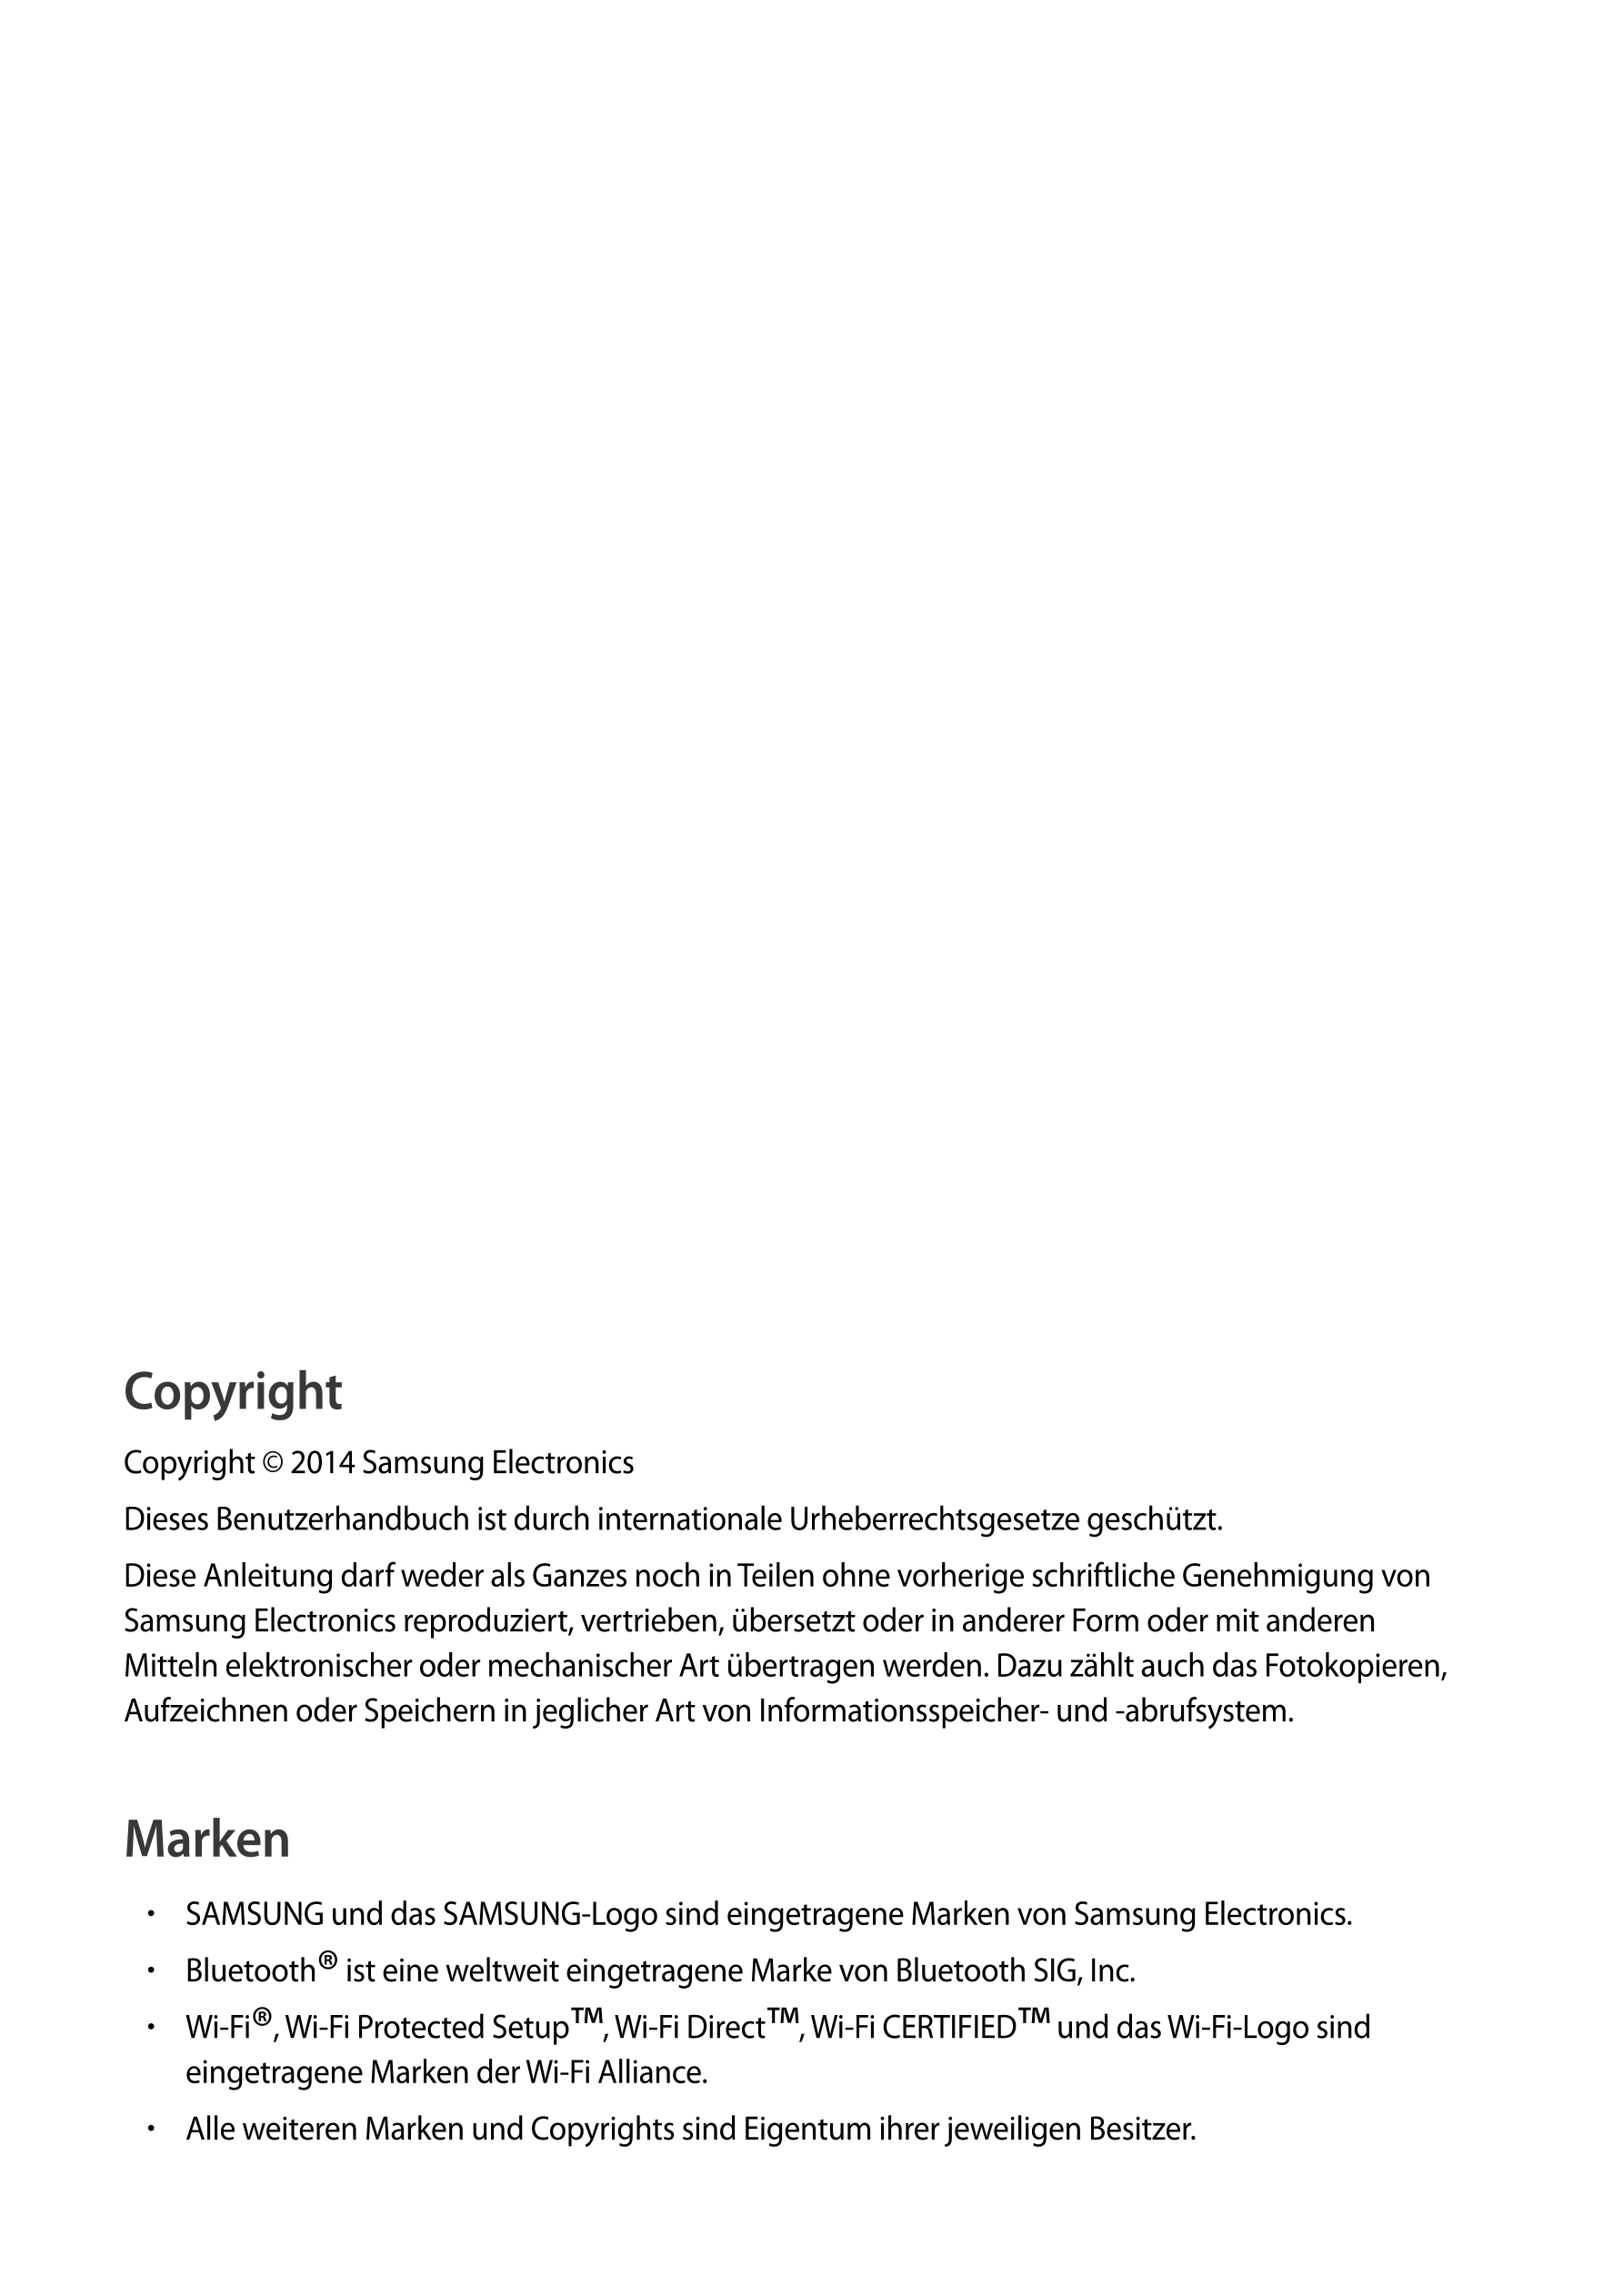 Copyright
Copyright © 2014 Samsung Electronics
Dieses Benutzerhandbuch ist durch internationale Urheberrechtsgesetze geschützt.
